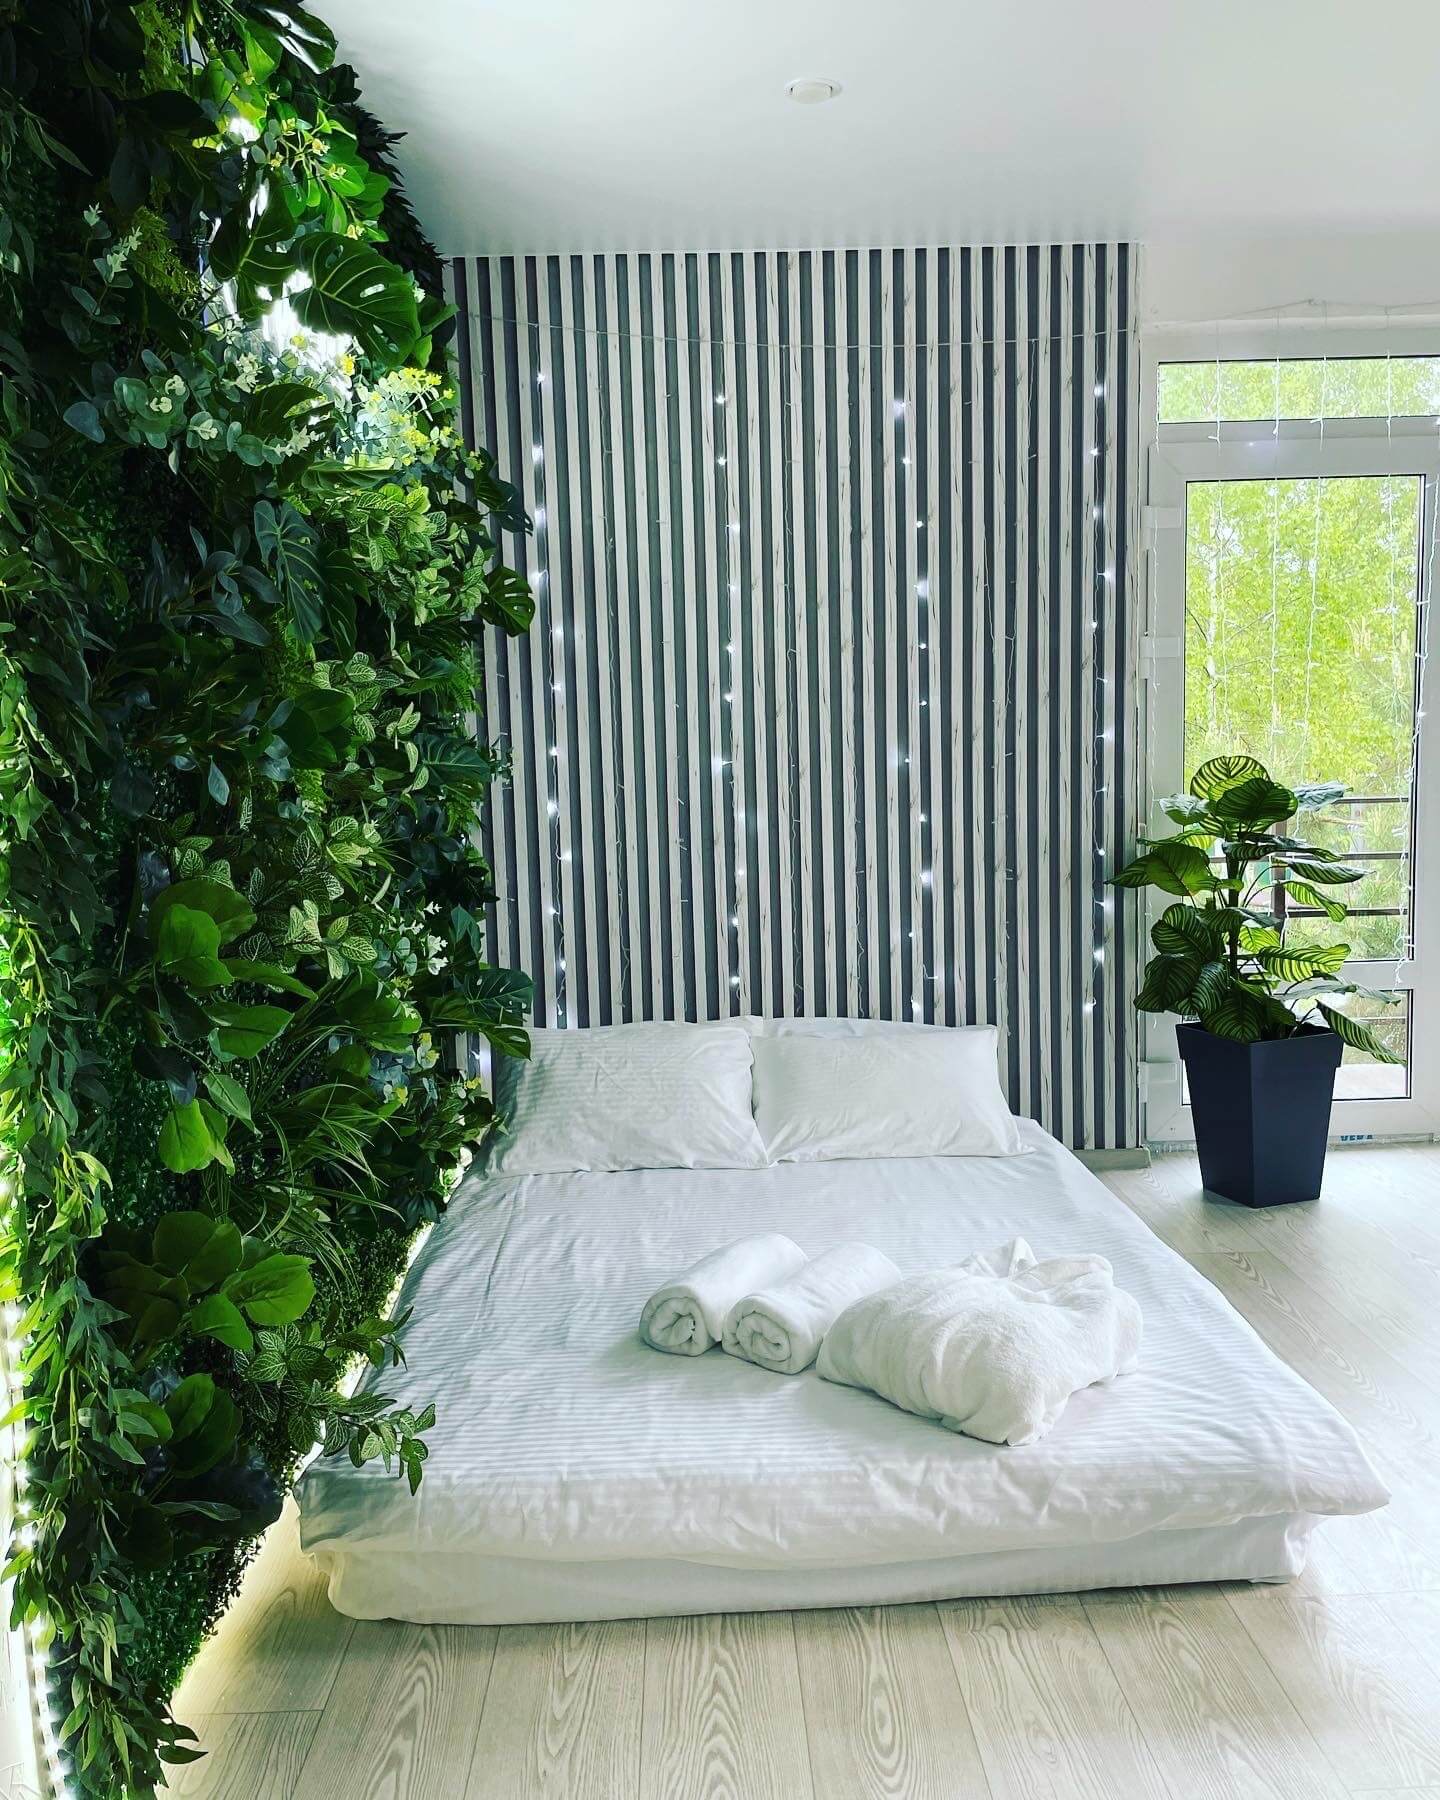 Гостевой дом «Оазис». Спальное место: низкопольная кровать, вертикальное озеленение.